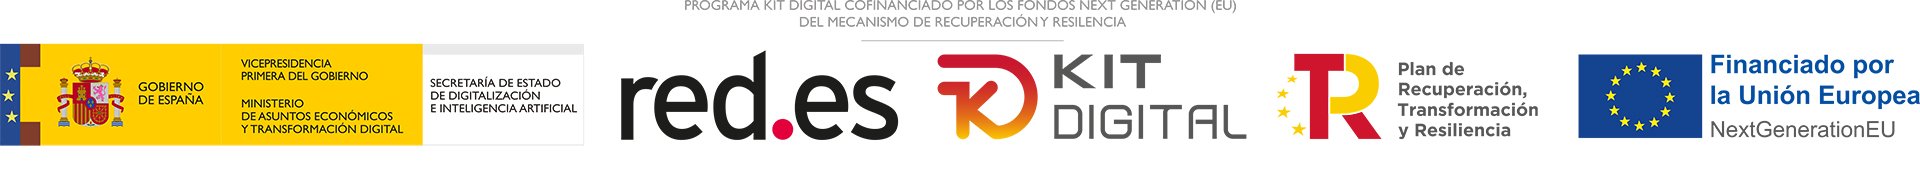 logos-programa-kit-digital-cofinanciado-por-los-fondos-next-generation-eu-del-mecanismo-de-recuperacion-y-resiliencia